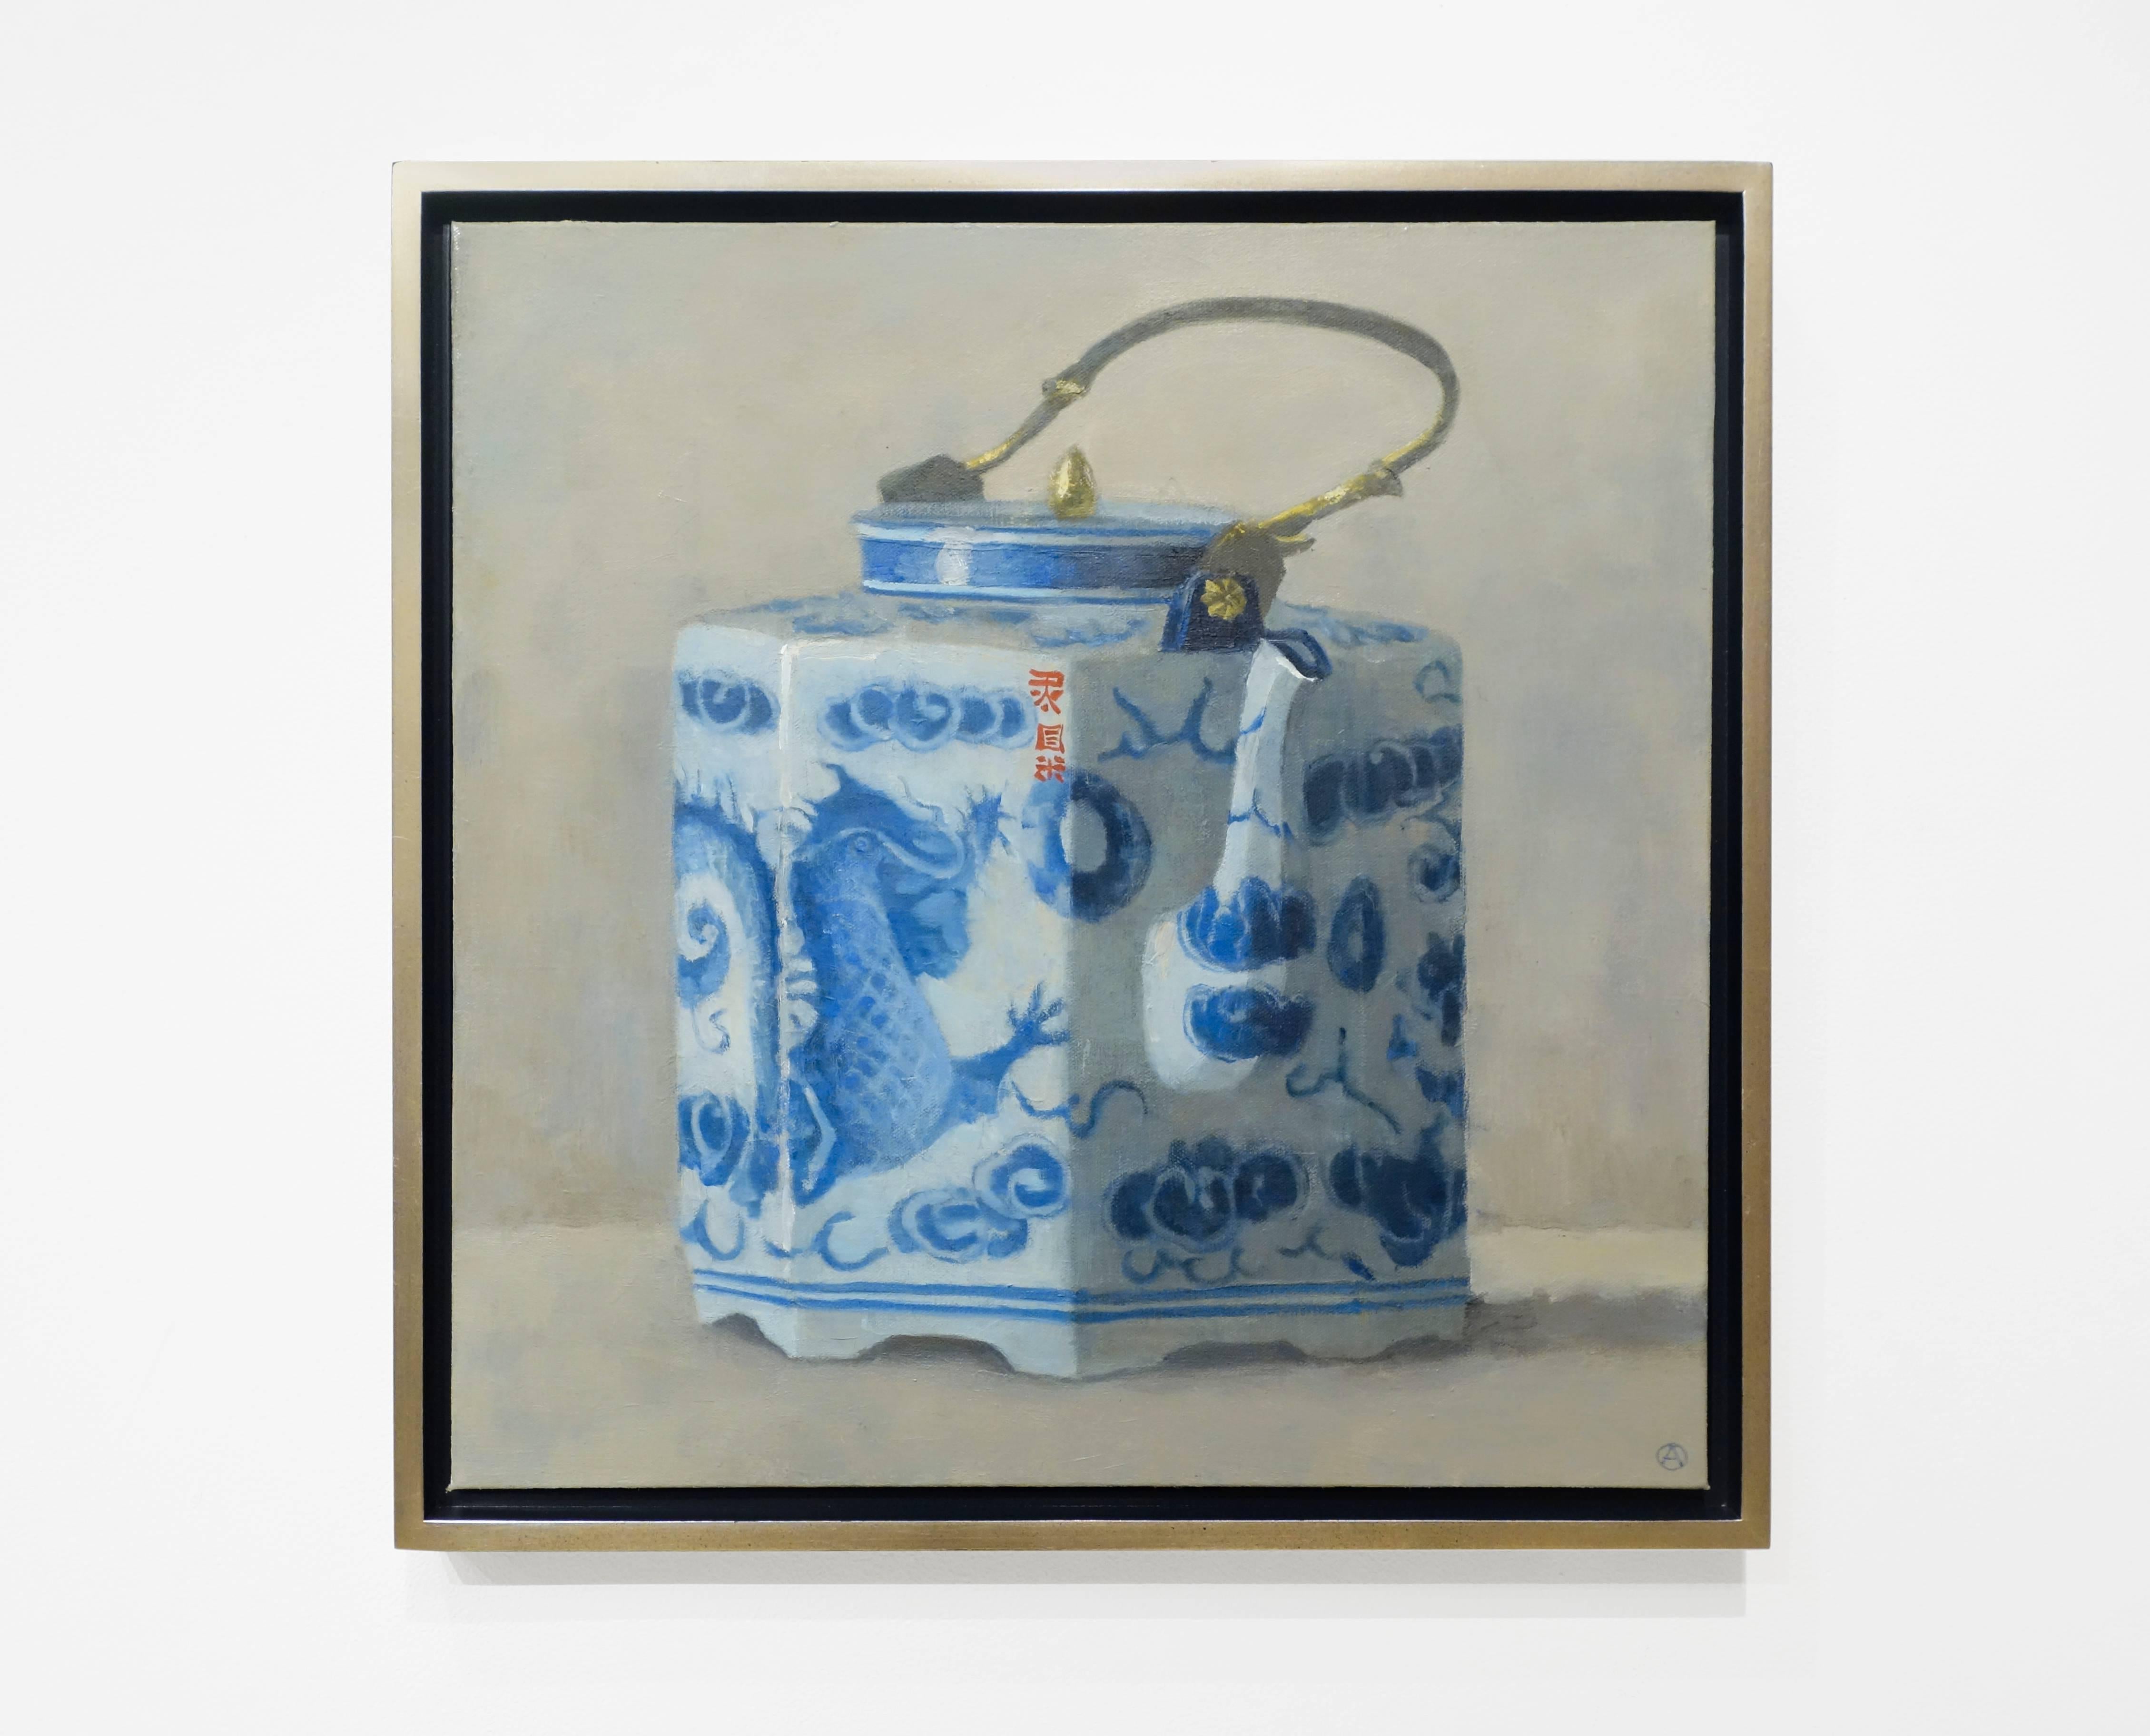 TEAPOT WITH DRAGON, white china, blue detail, teapot, still-life - Painting by Olga Antonova